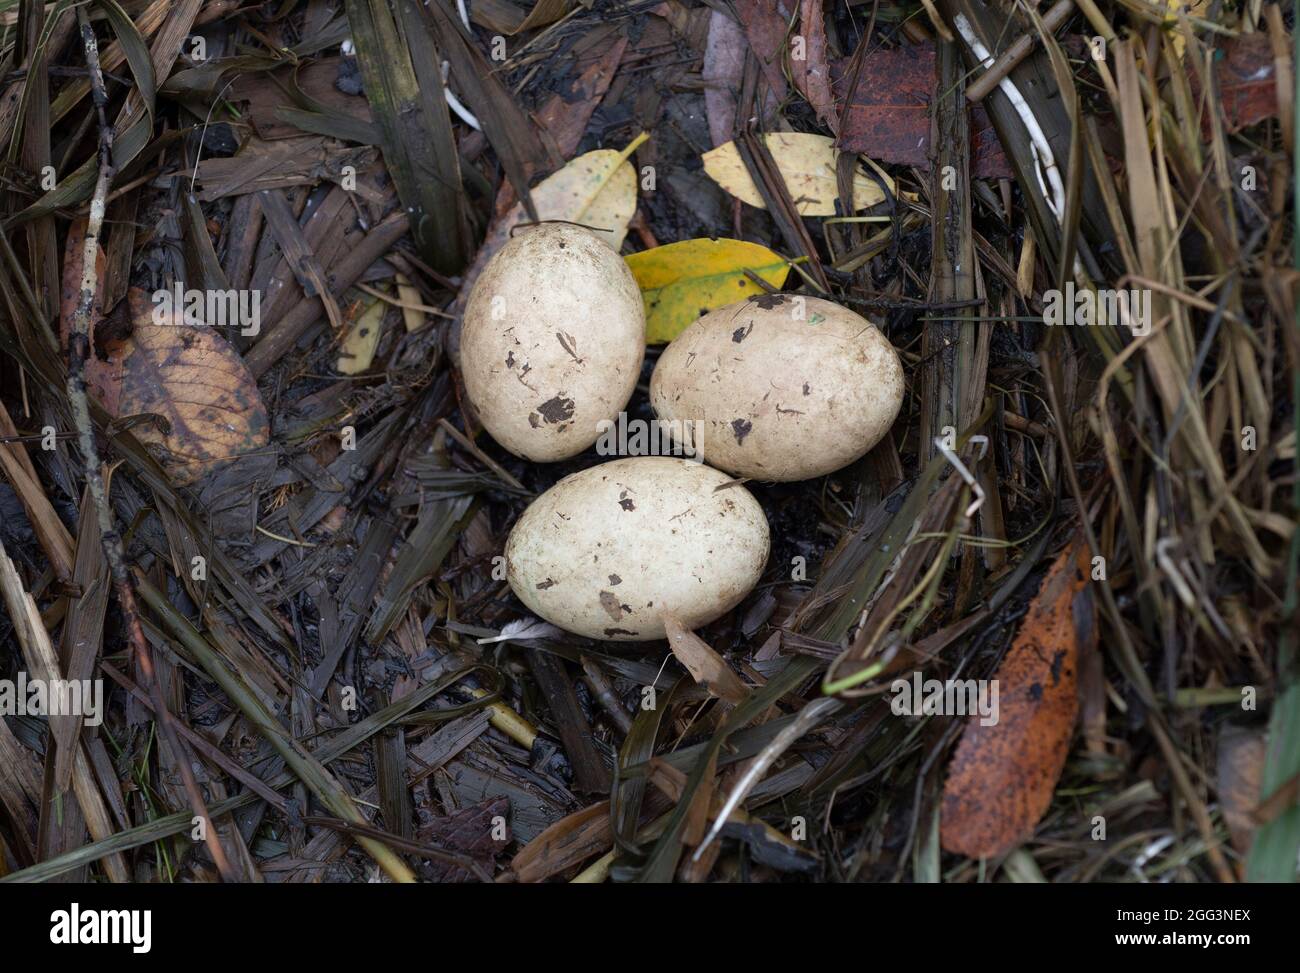 Großer Haubentaucher, Podiceps cristatus, Nest mit drei Eiern, Brent Reservoir, Welsh Harp Reservoir, London, Vereinigtes Königreich Stockfoto